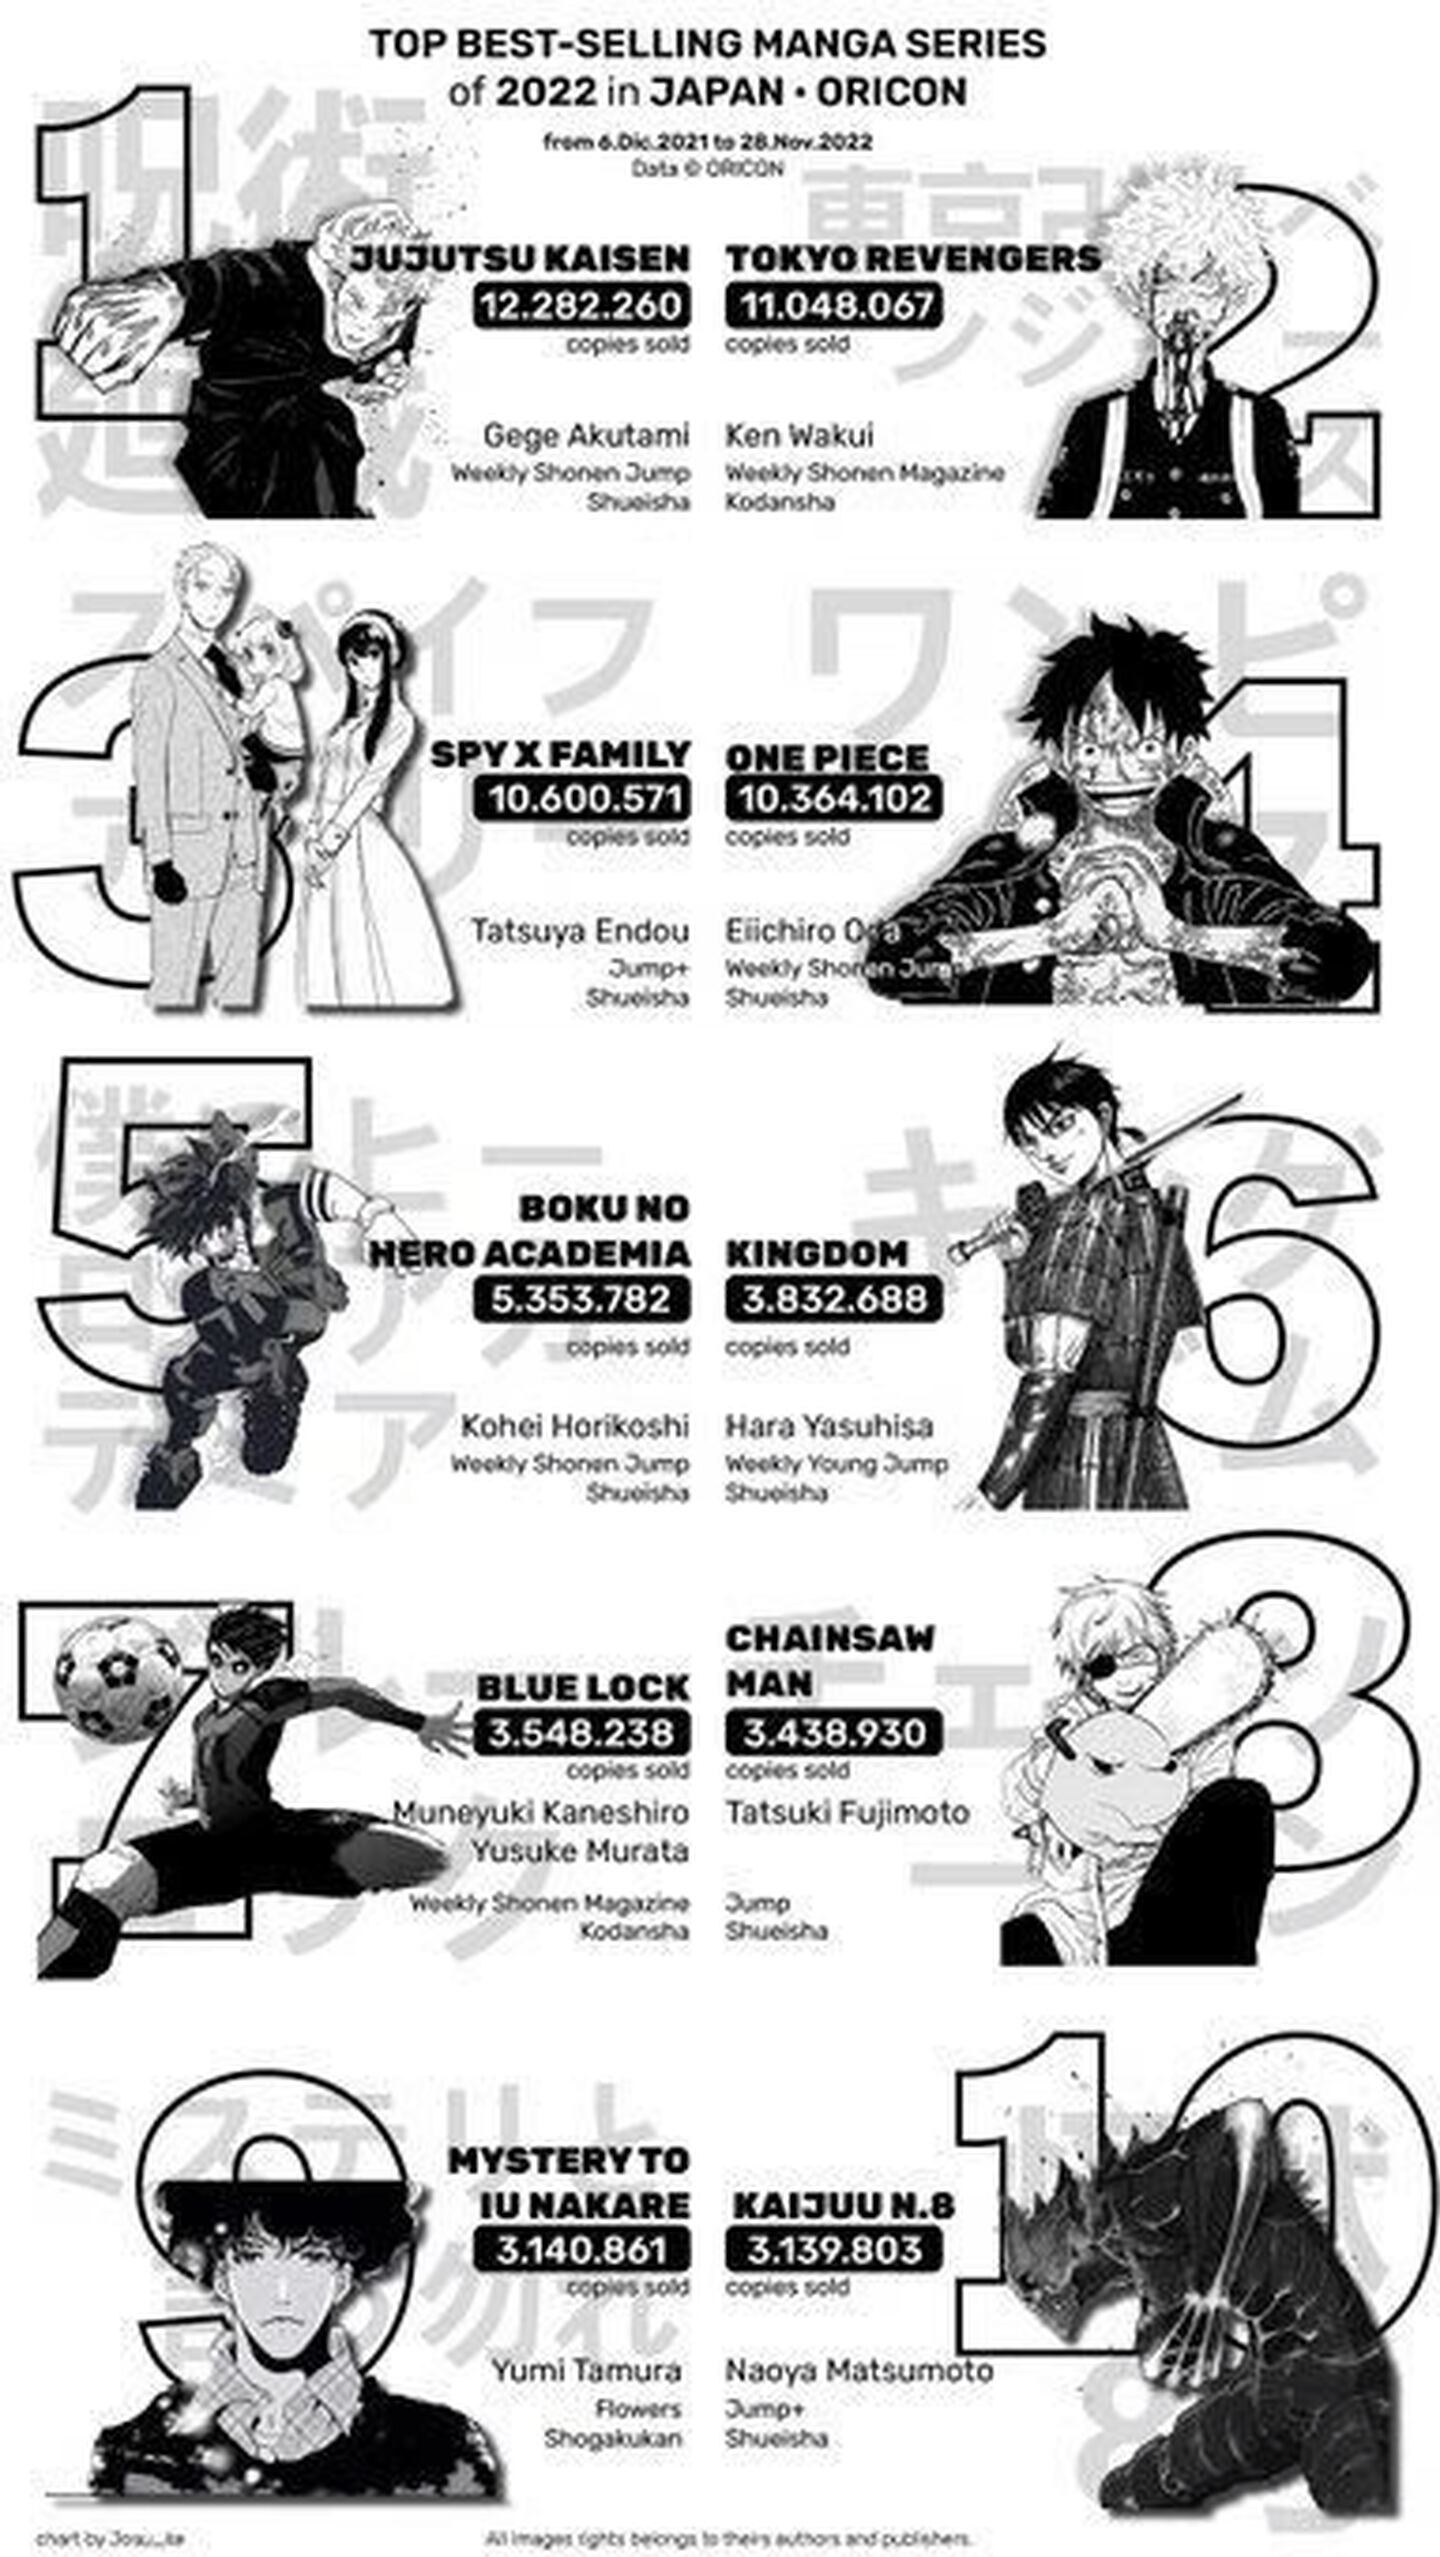 Oricon revela su conteo oficial de los mangas más vendidos de todo 2022. Chainsaw Man, One Piece y Dragon Ball fueron superados por Jujutsu Kaisen.